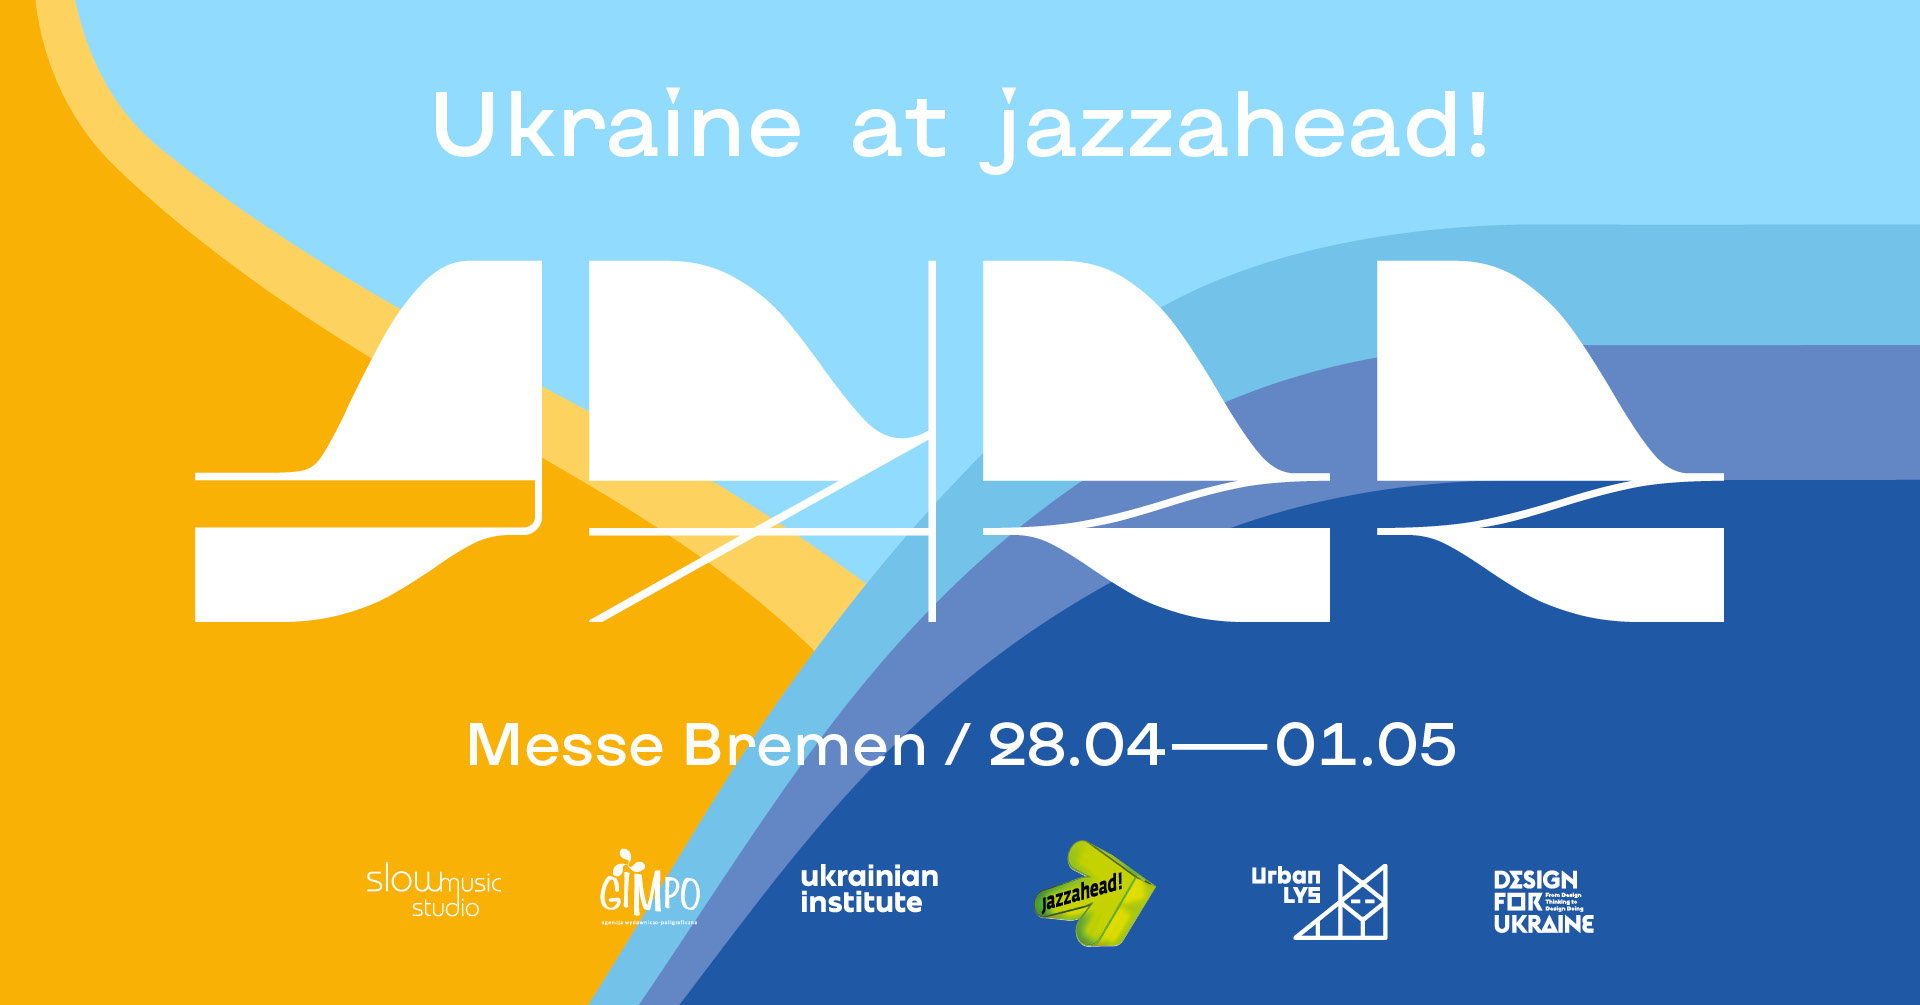 Jazz_from_Ukraine_FB_banner